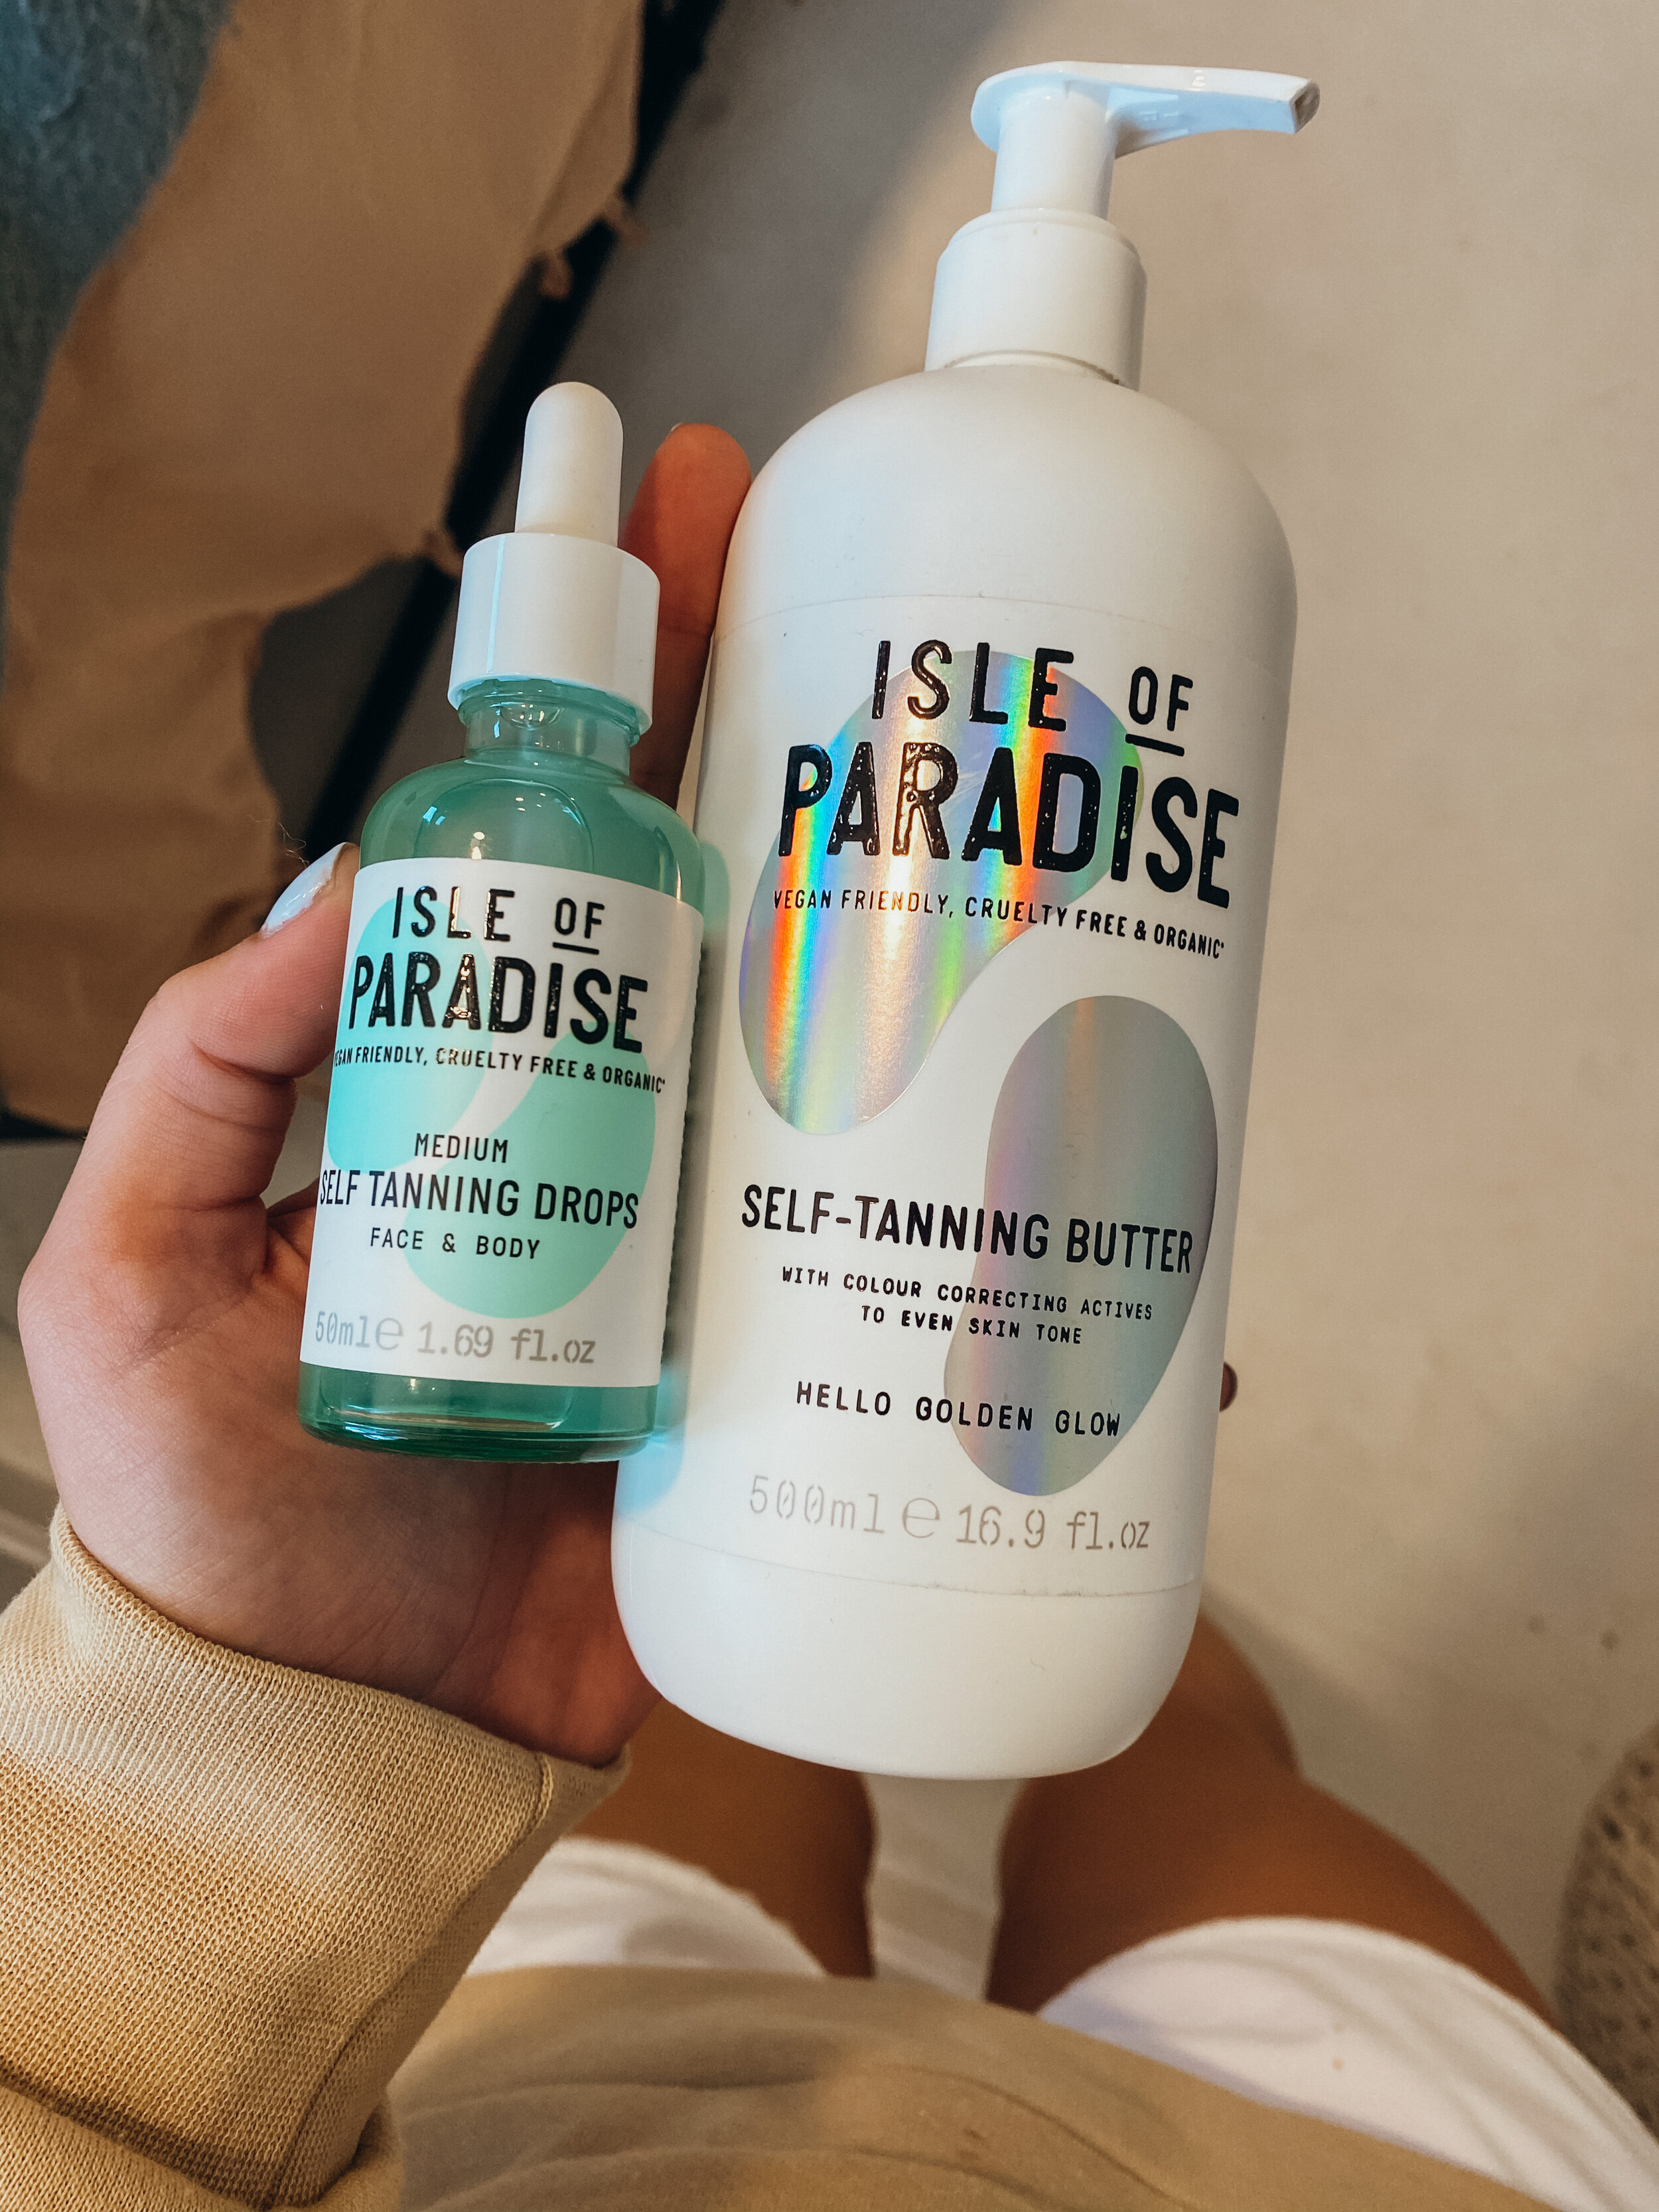 Isle of Paradise Self Tanning Drops Medium